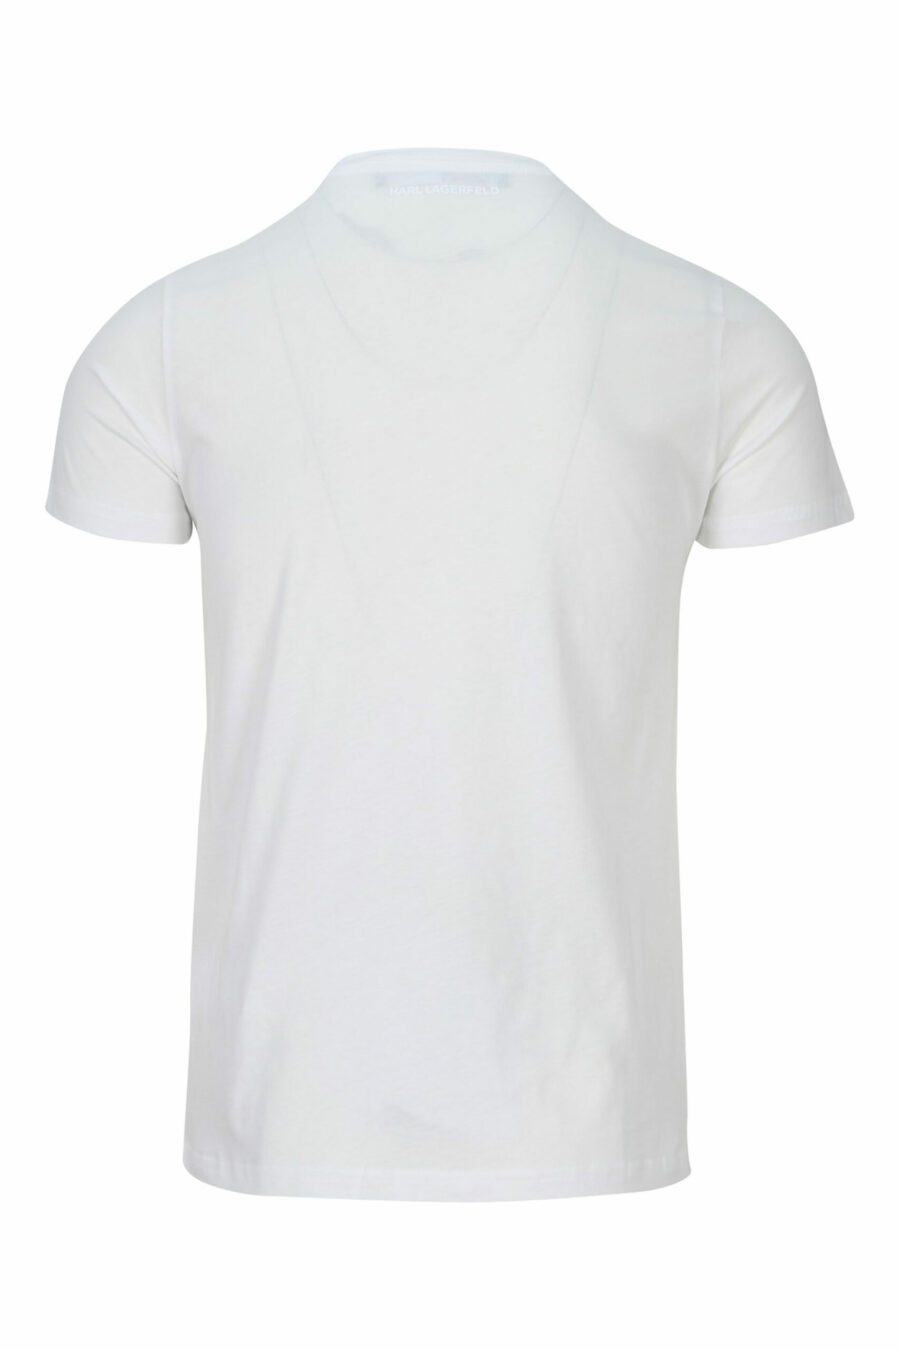 Camiseta blanca de cuello redondo con maxilogo "karl" - 4062225535237 1 scaled